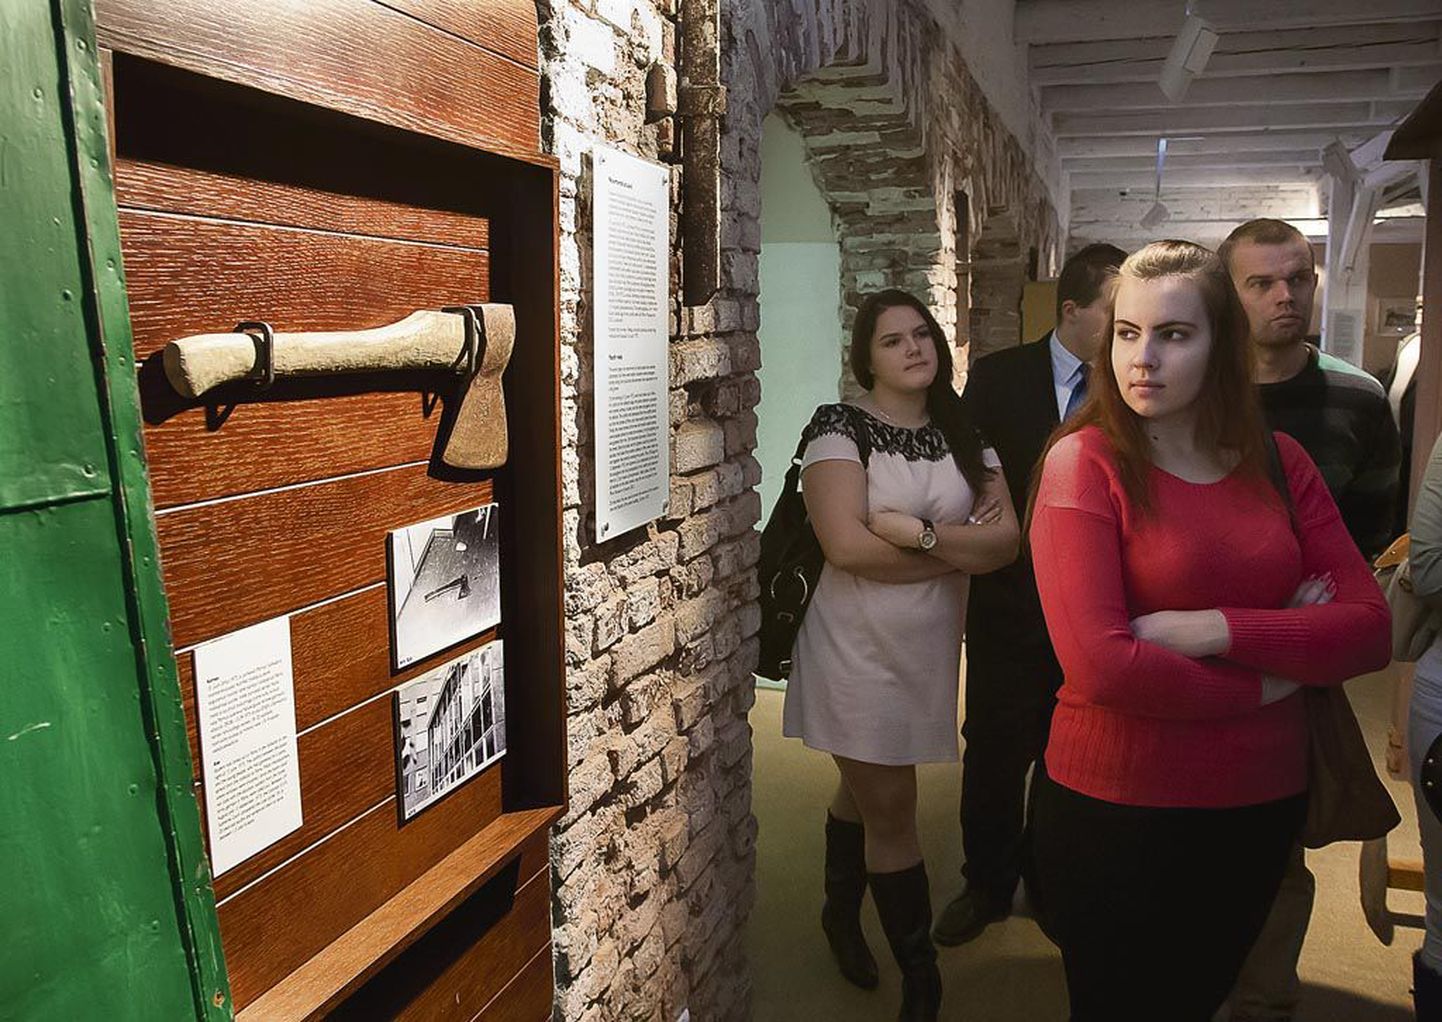 Noorte kodu-uurijate kokkusaamise juhatas sisse ringkäik Pärnu muuseumis.